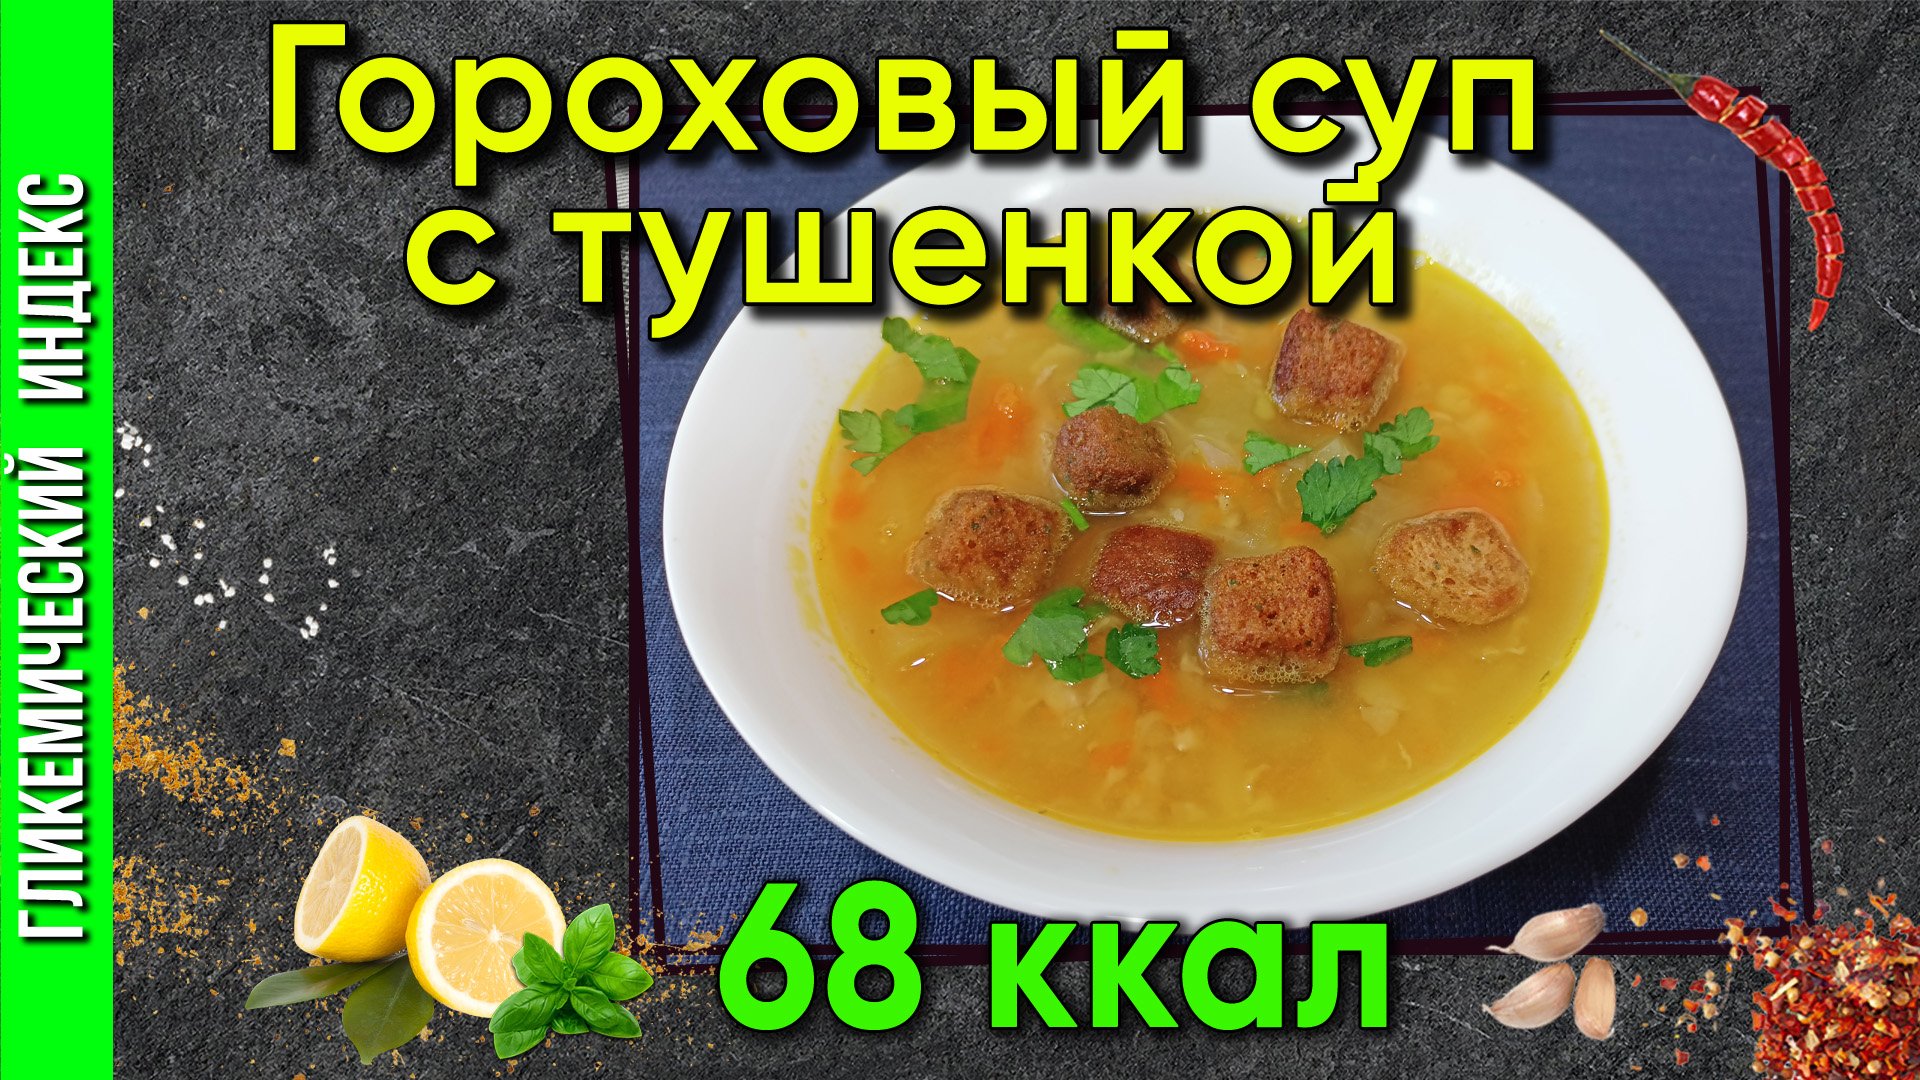 Гороховый суп с тушёнкой — рецепт сытного супа в мультиварке.